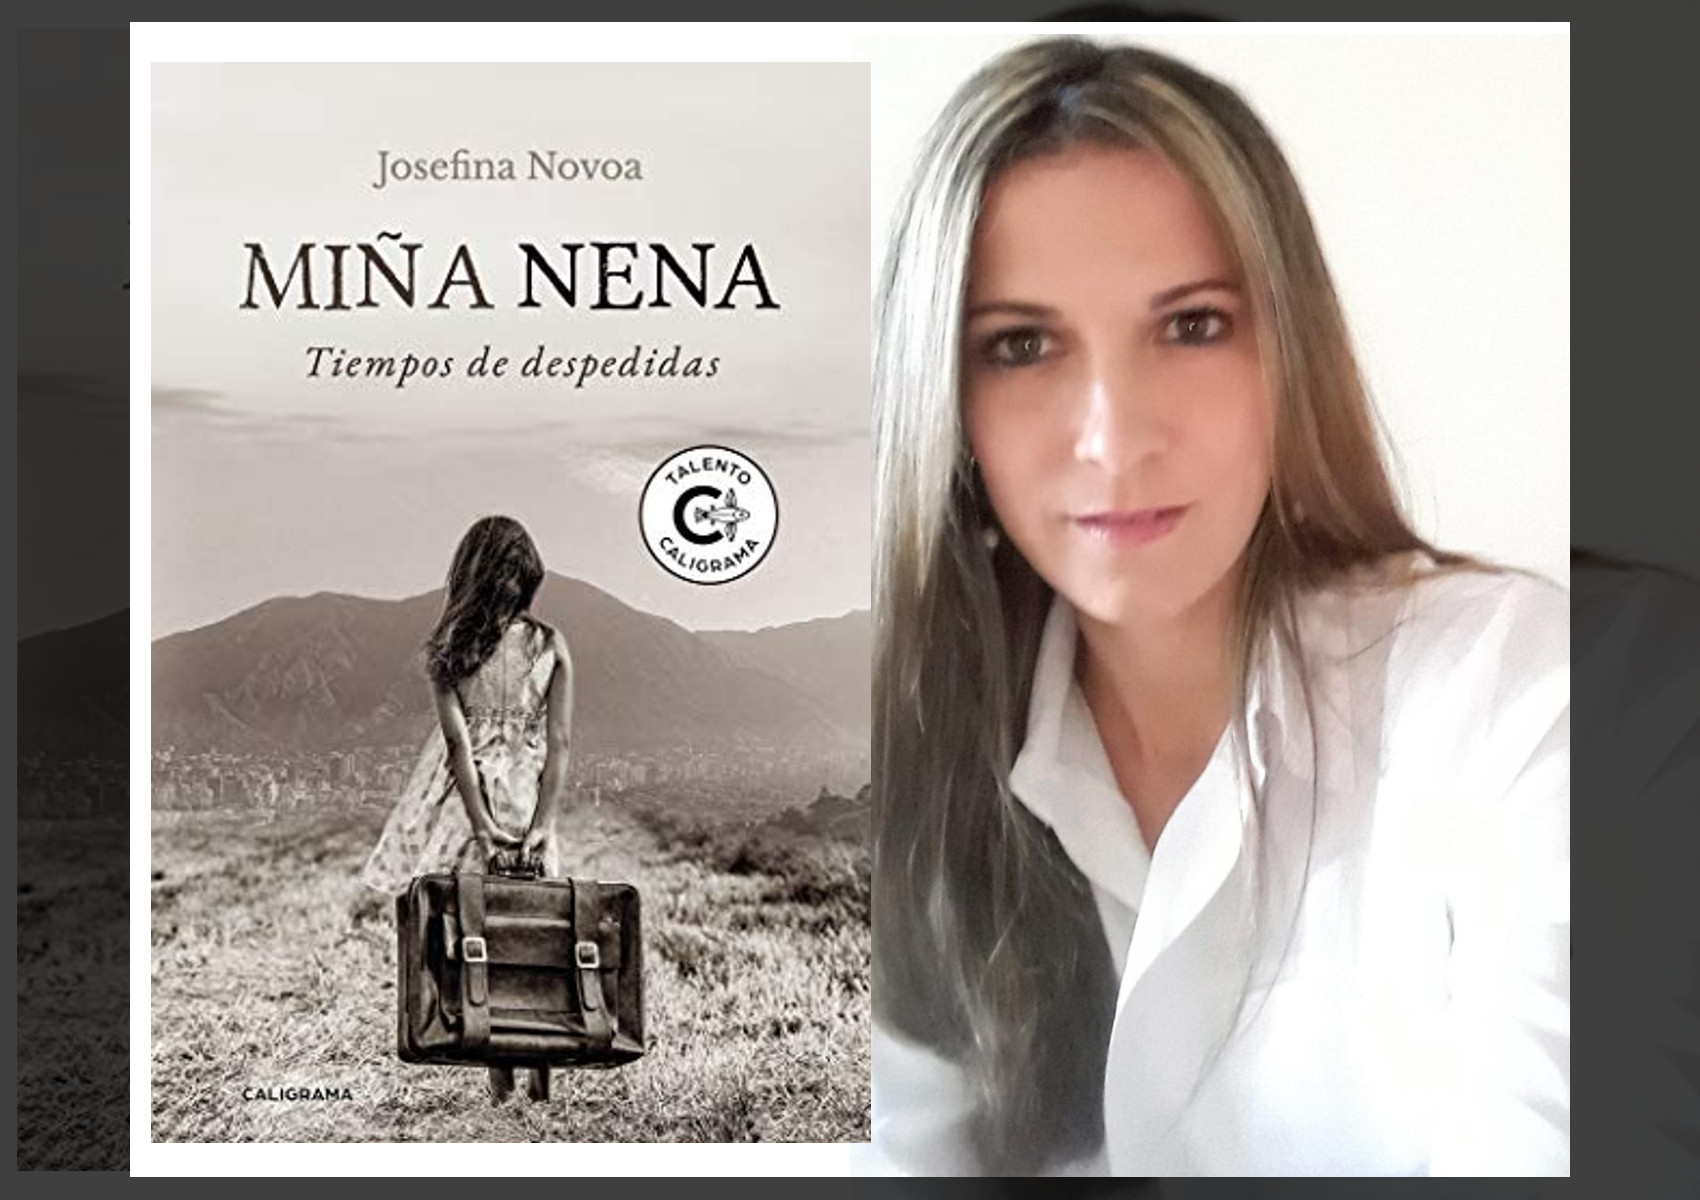 Miña nena: Entrevista a la escritora Josefina Novoa sobre su novela